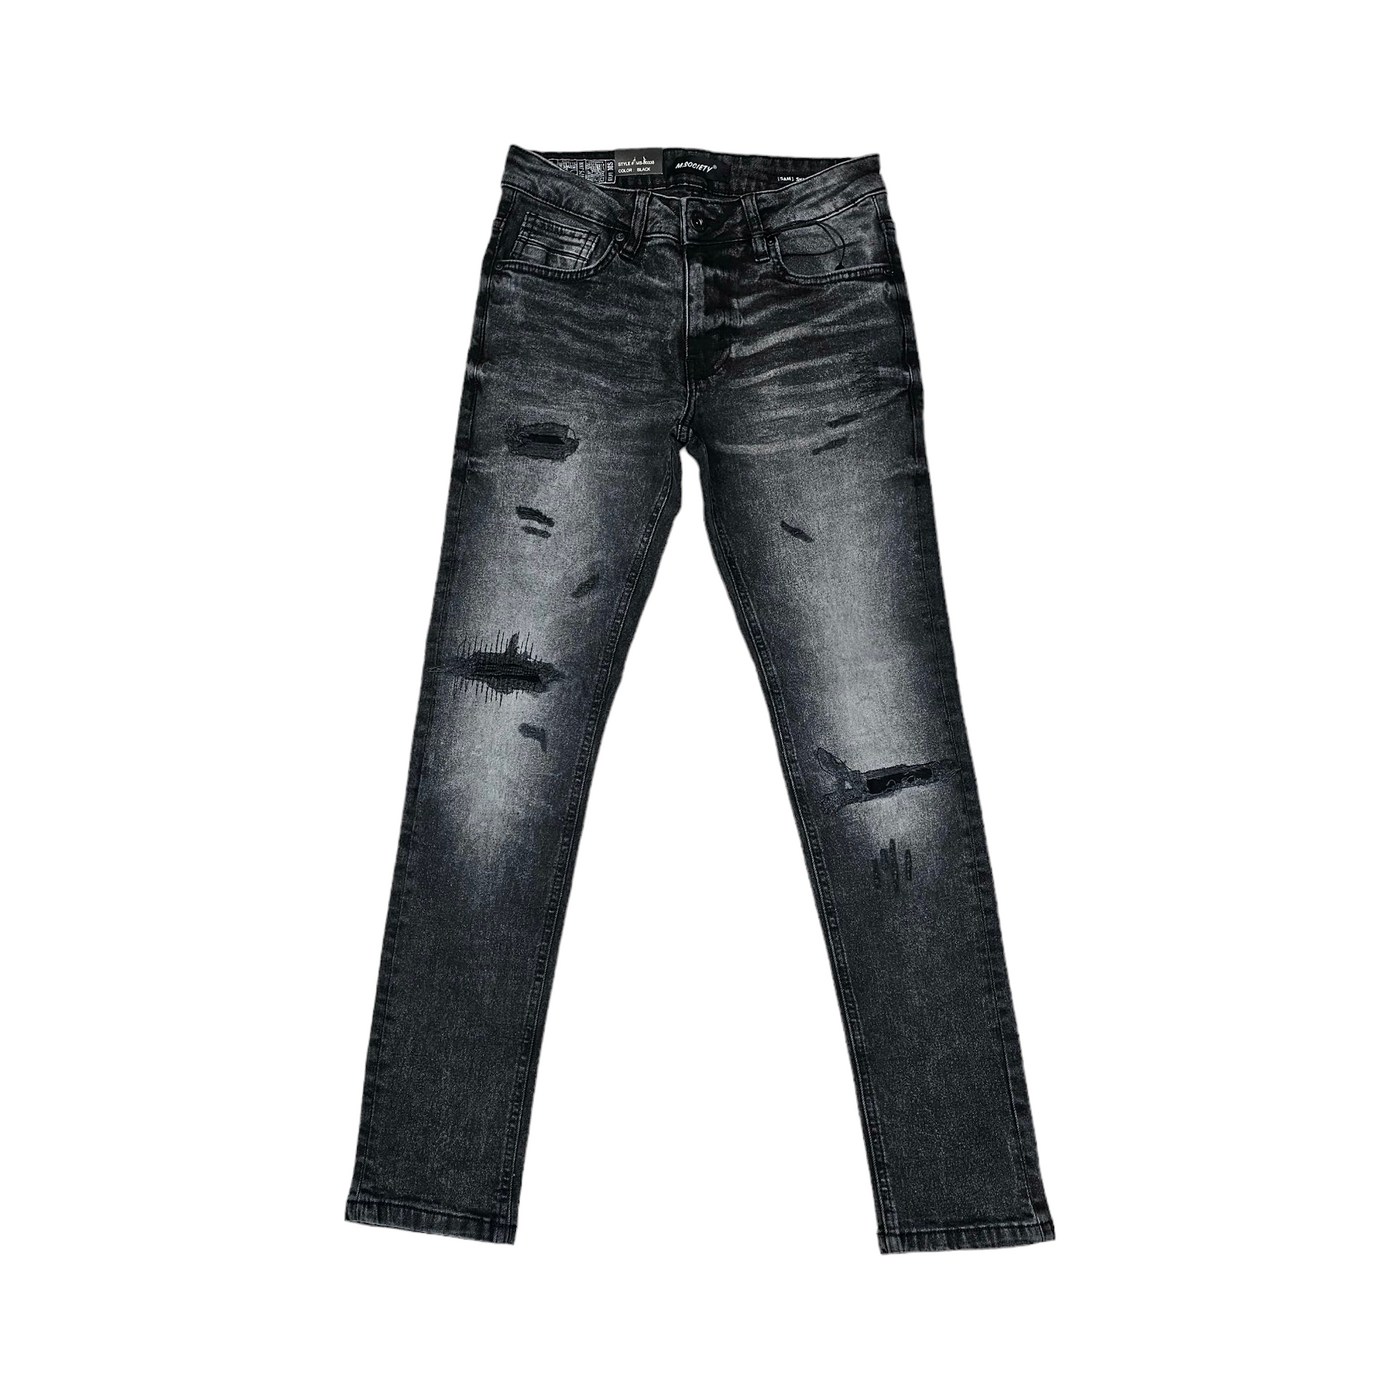 M. Society Men's Skinny Fit Jeans  Black 80338